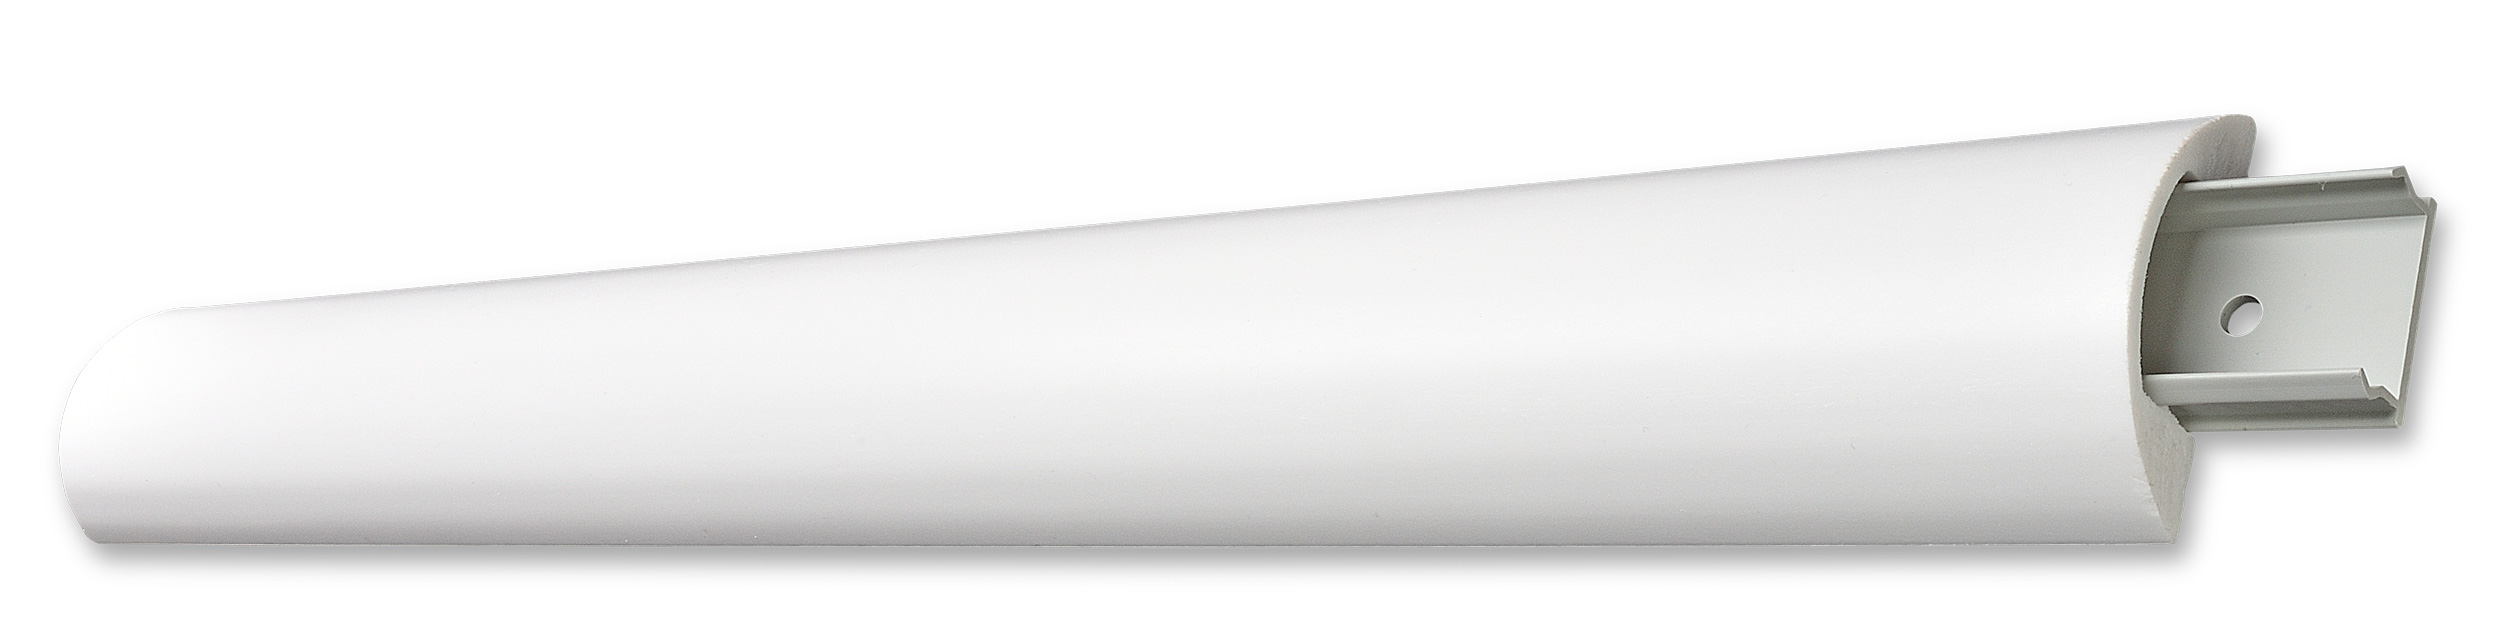 Decosa Klipsprofil Thea inkl. 3 Klipse, weiß, 23 x 65 mm, Länge: 1,2 m